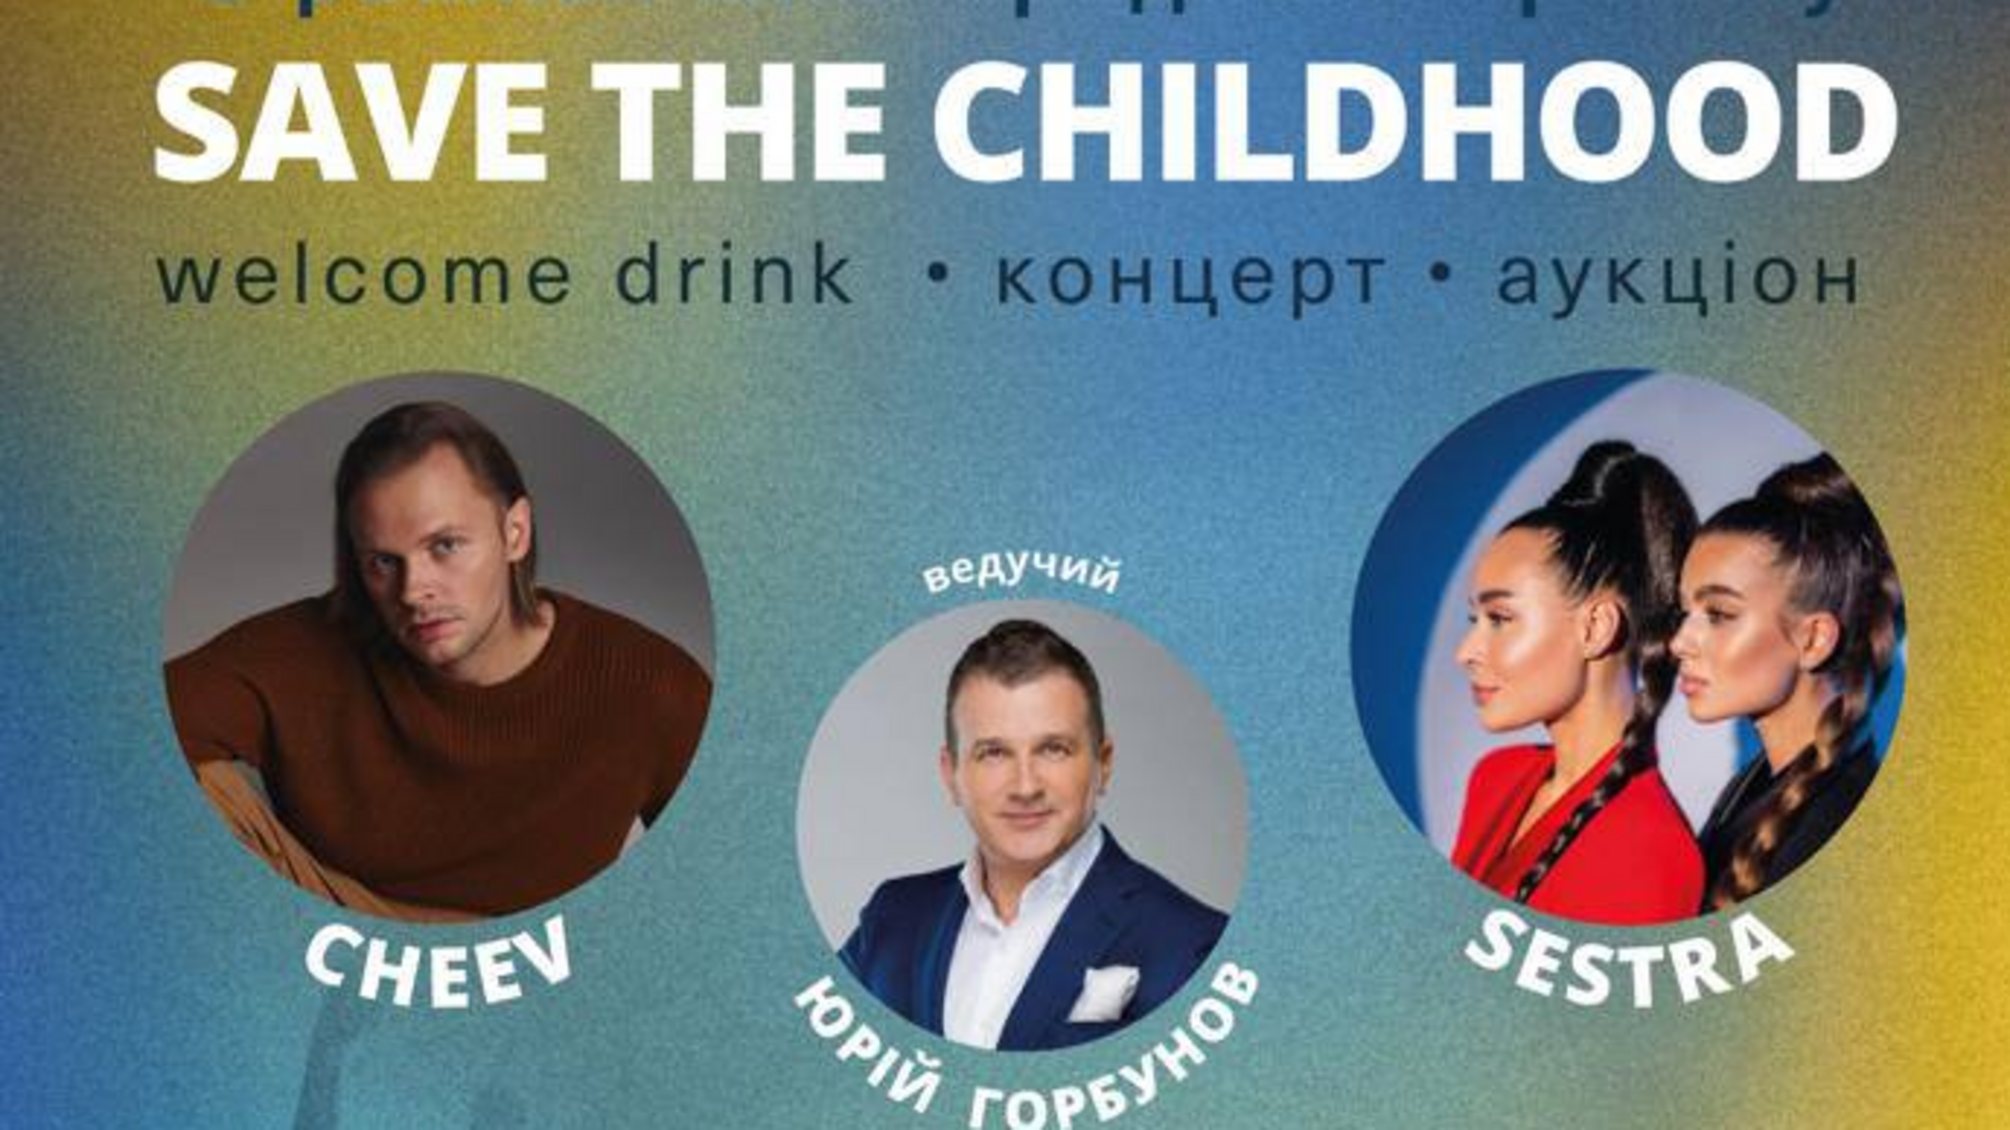 В столице состоится благотворительный вечер 'Save the childhood' для сбора средств на психологическую и физическую реабилитацию детей